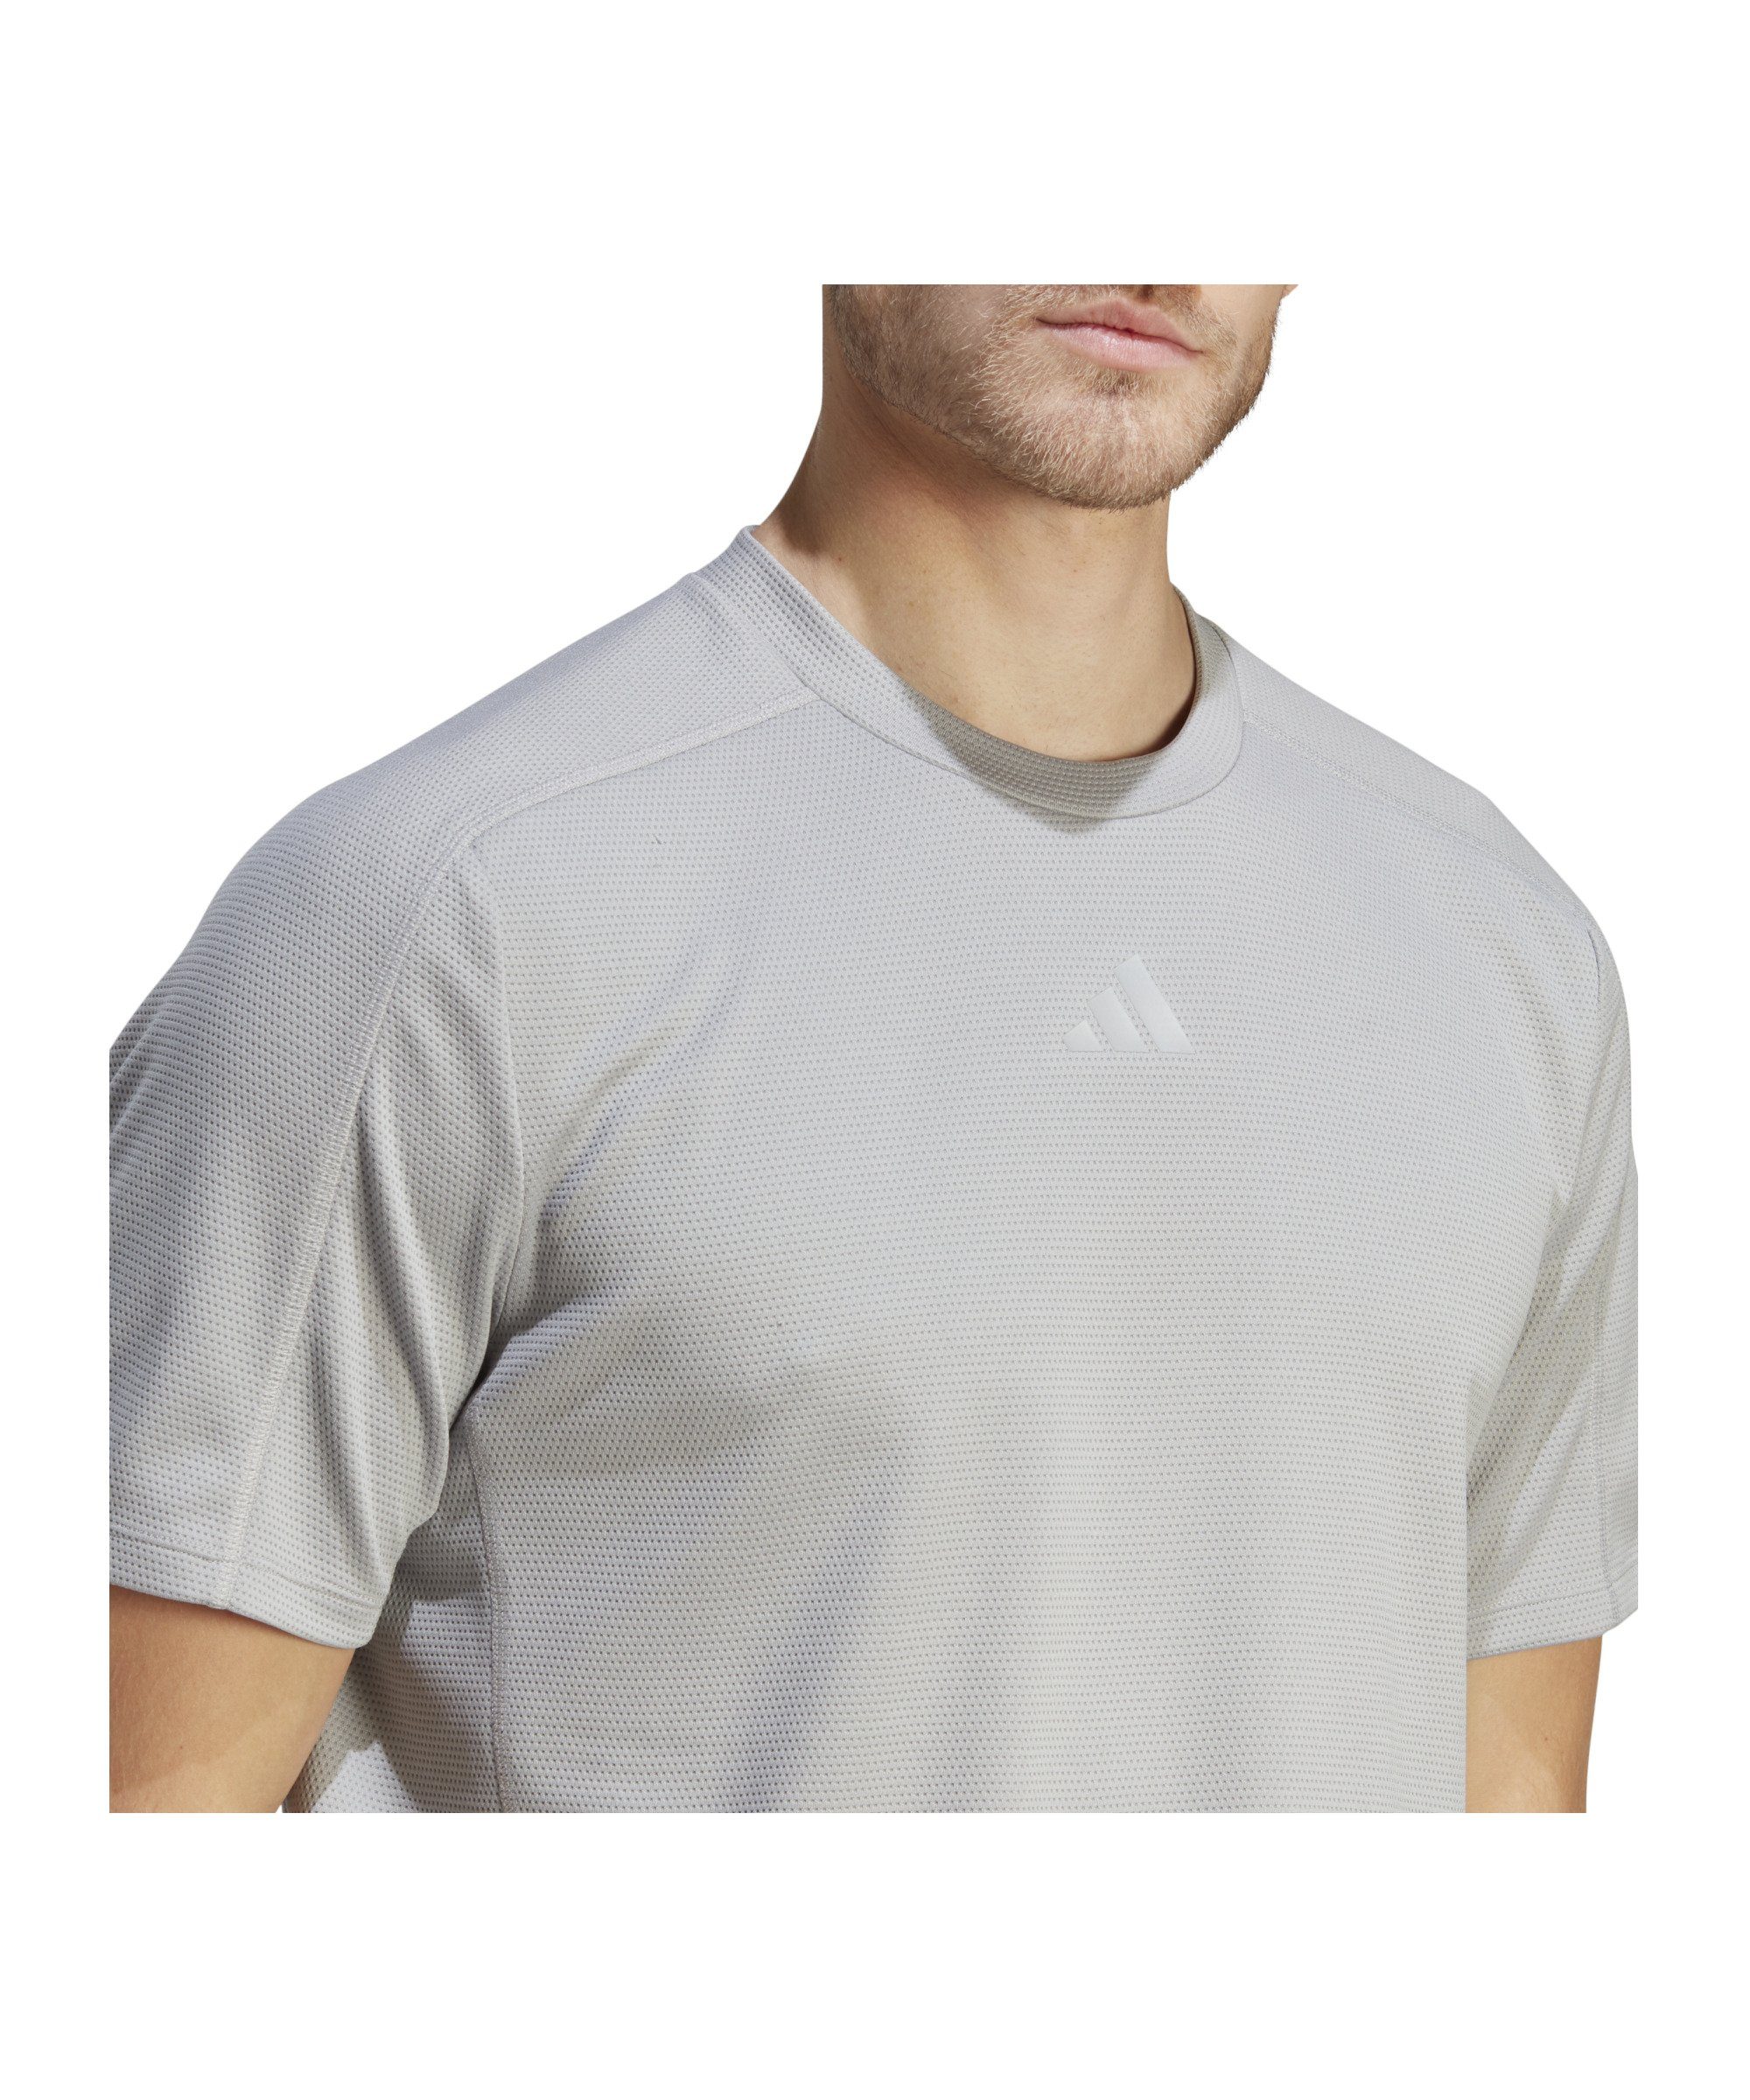 Workout grau T-Shirt default T-Shirt adidas Performance